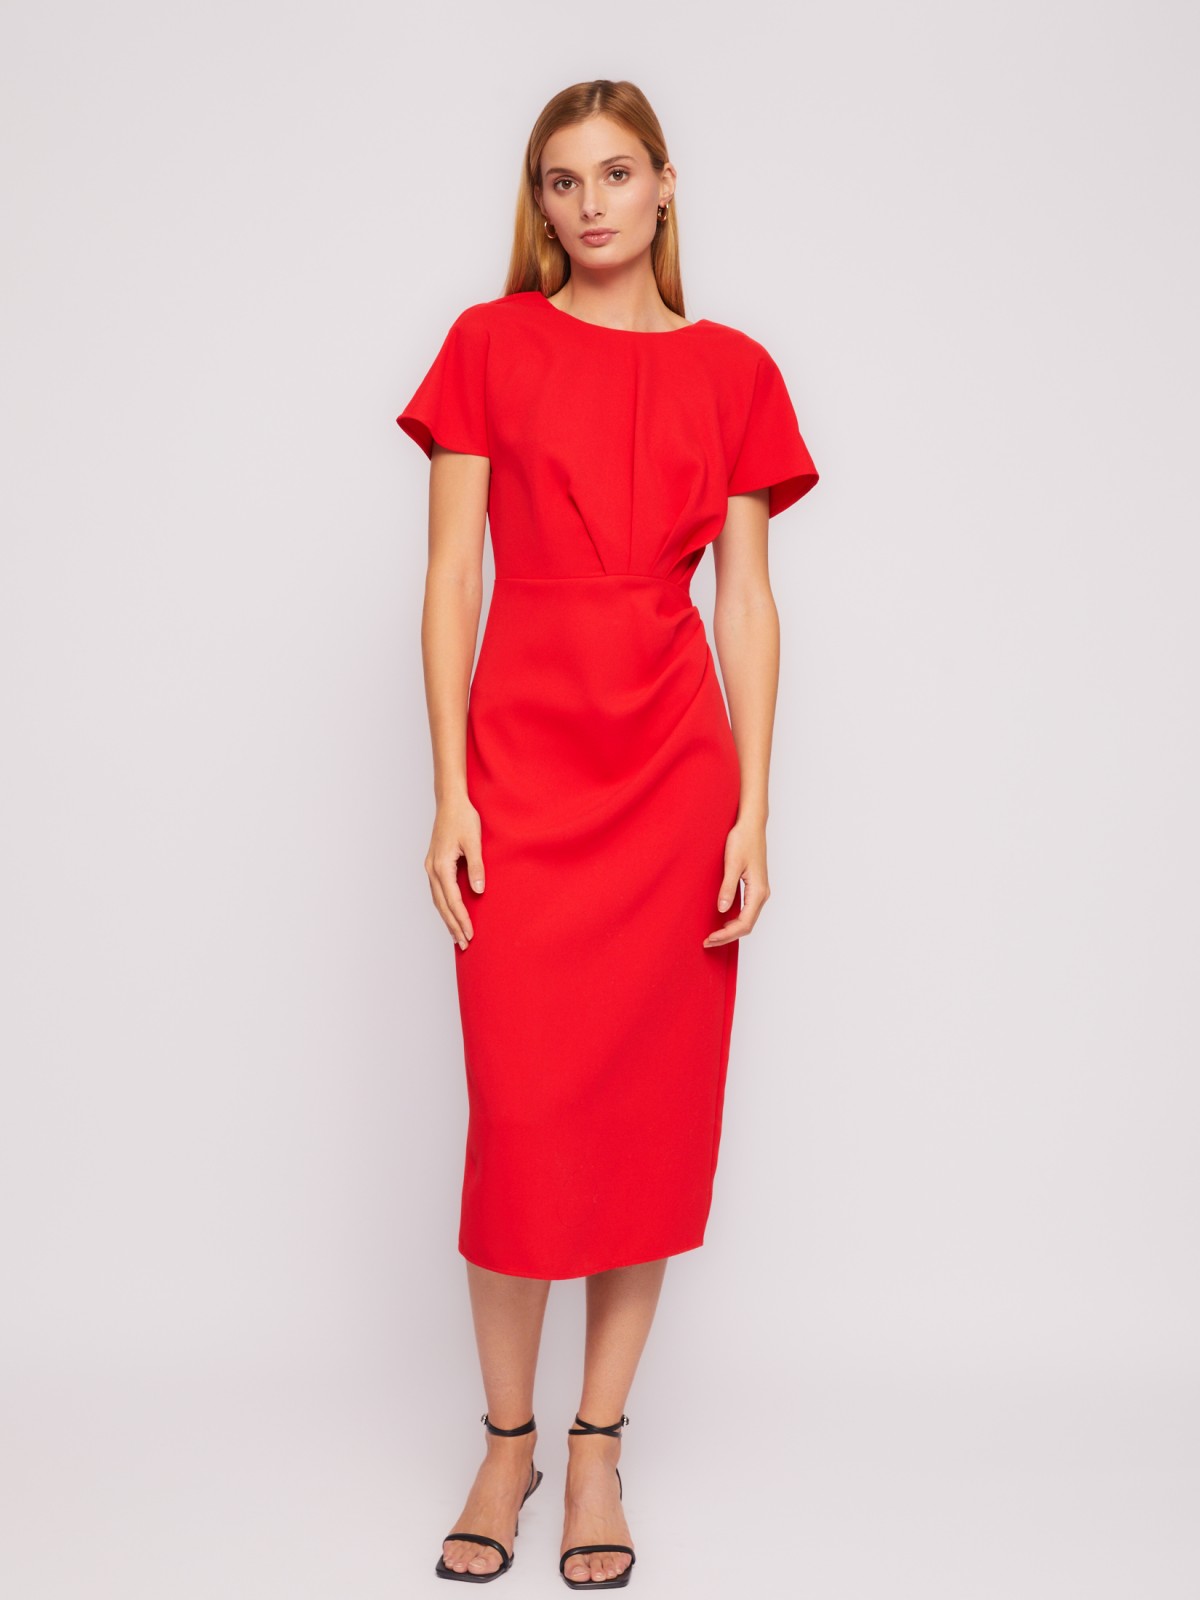 Платье длины миди с драпировкой и вырезом на спине zolla 024218239311, цвет красный, размер XS - фото 3